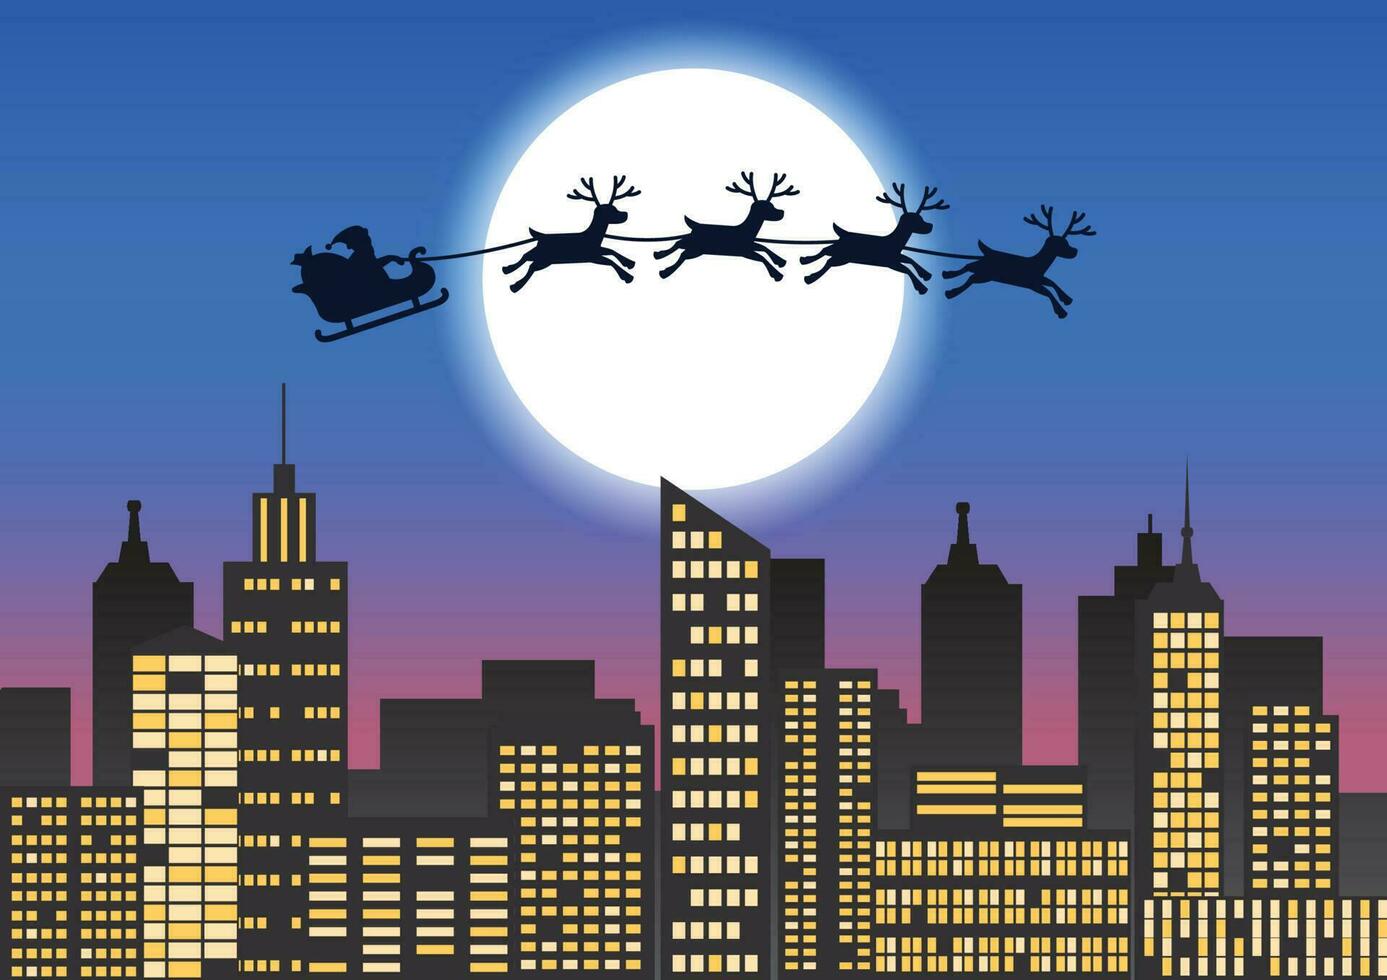 Papa Noel claus y reno mosca terminado el ciudad a enviar regalo a gente, mucha de rascacielos y ligero formar ventana vector